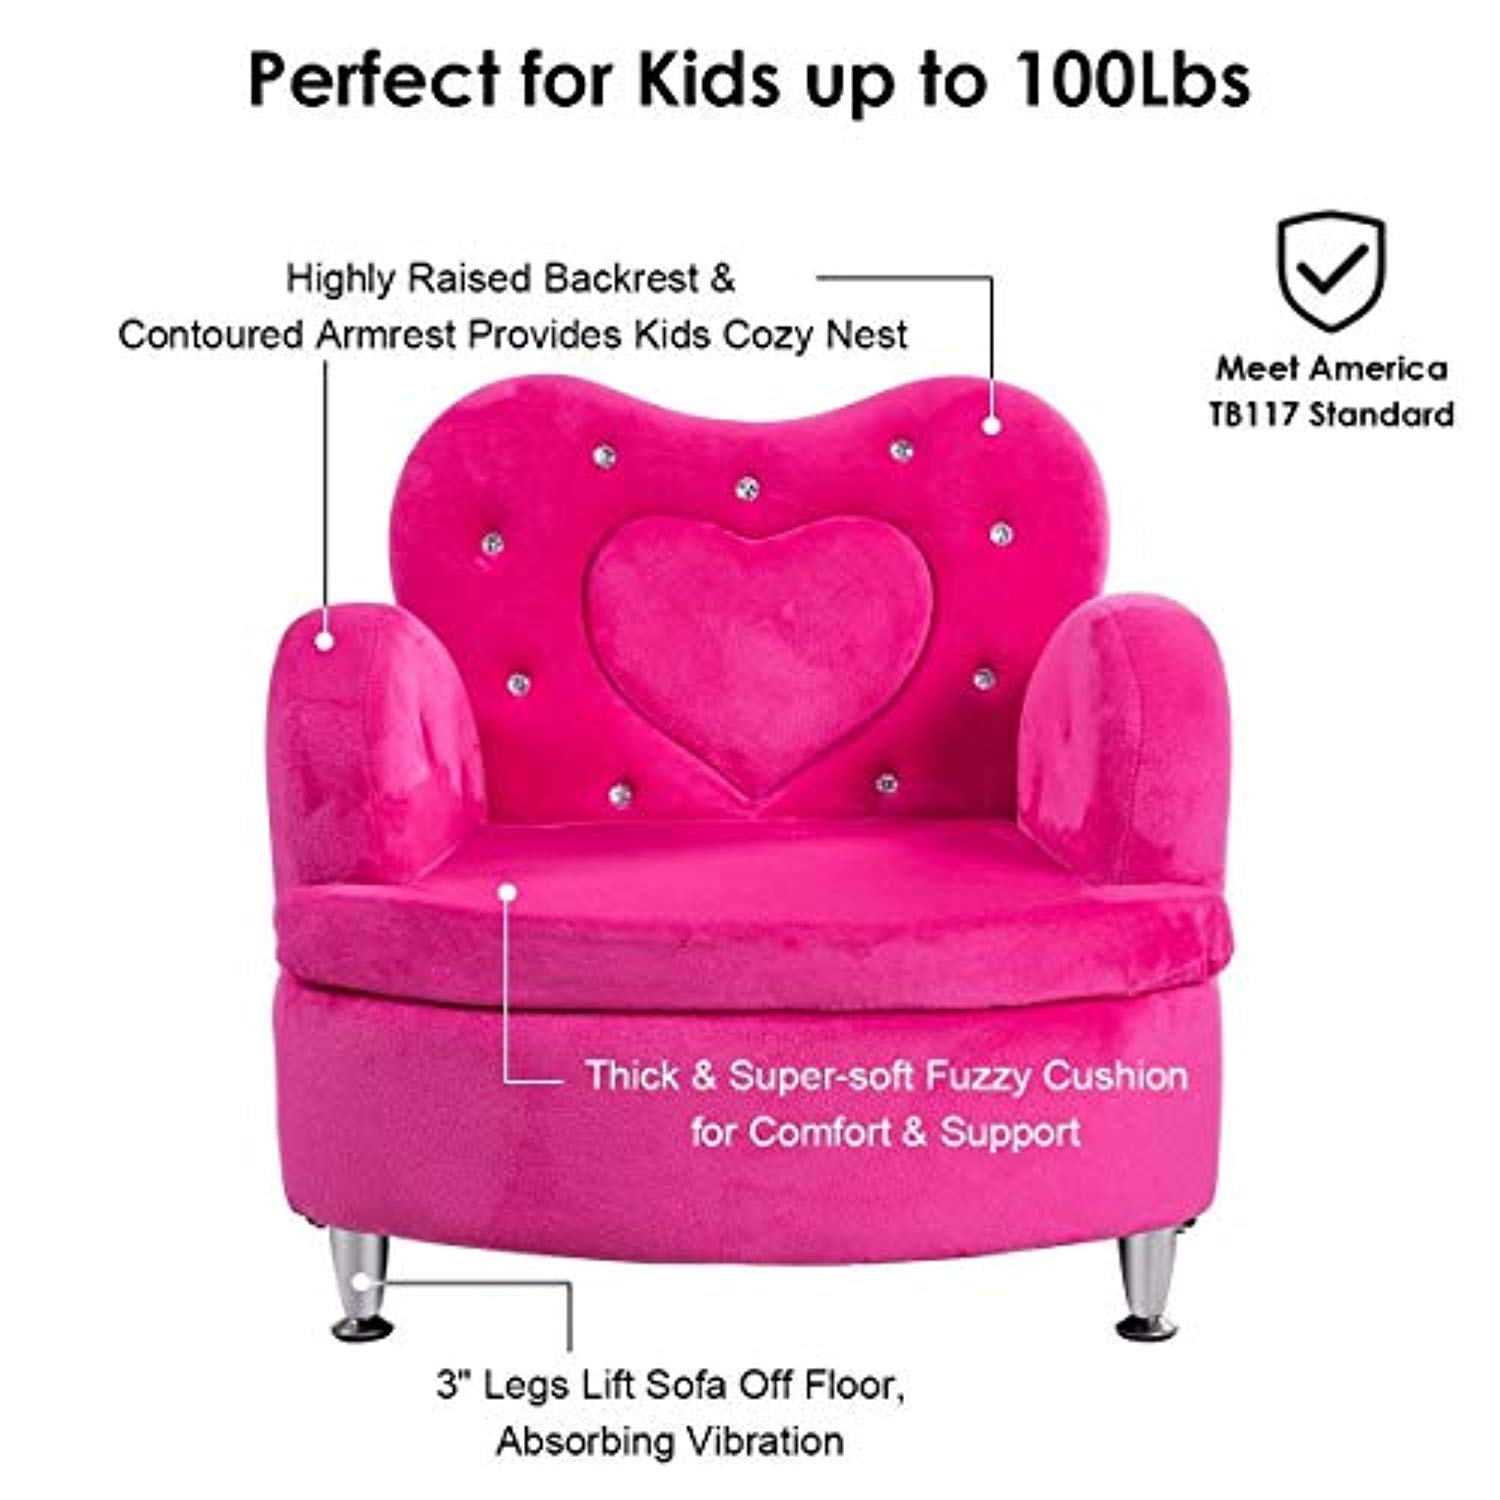 girls sofa chair